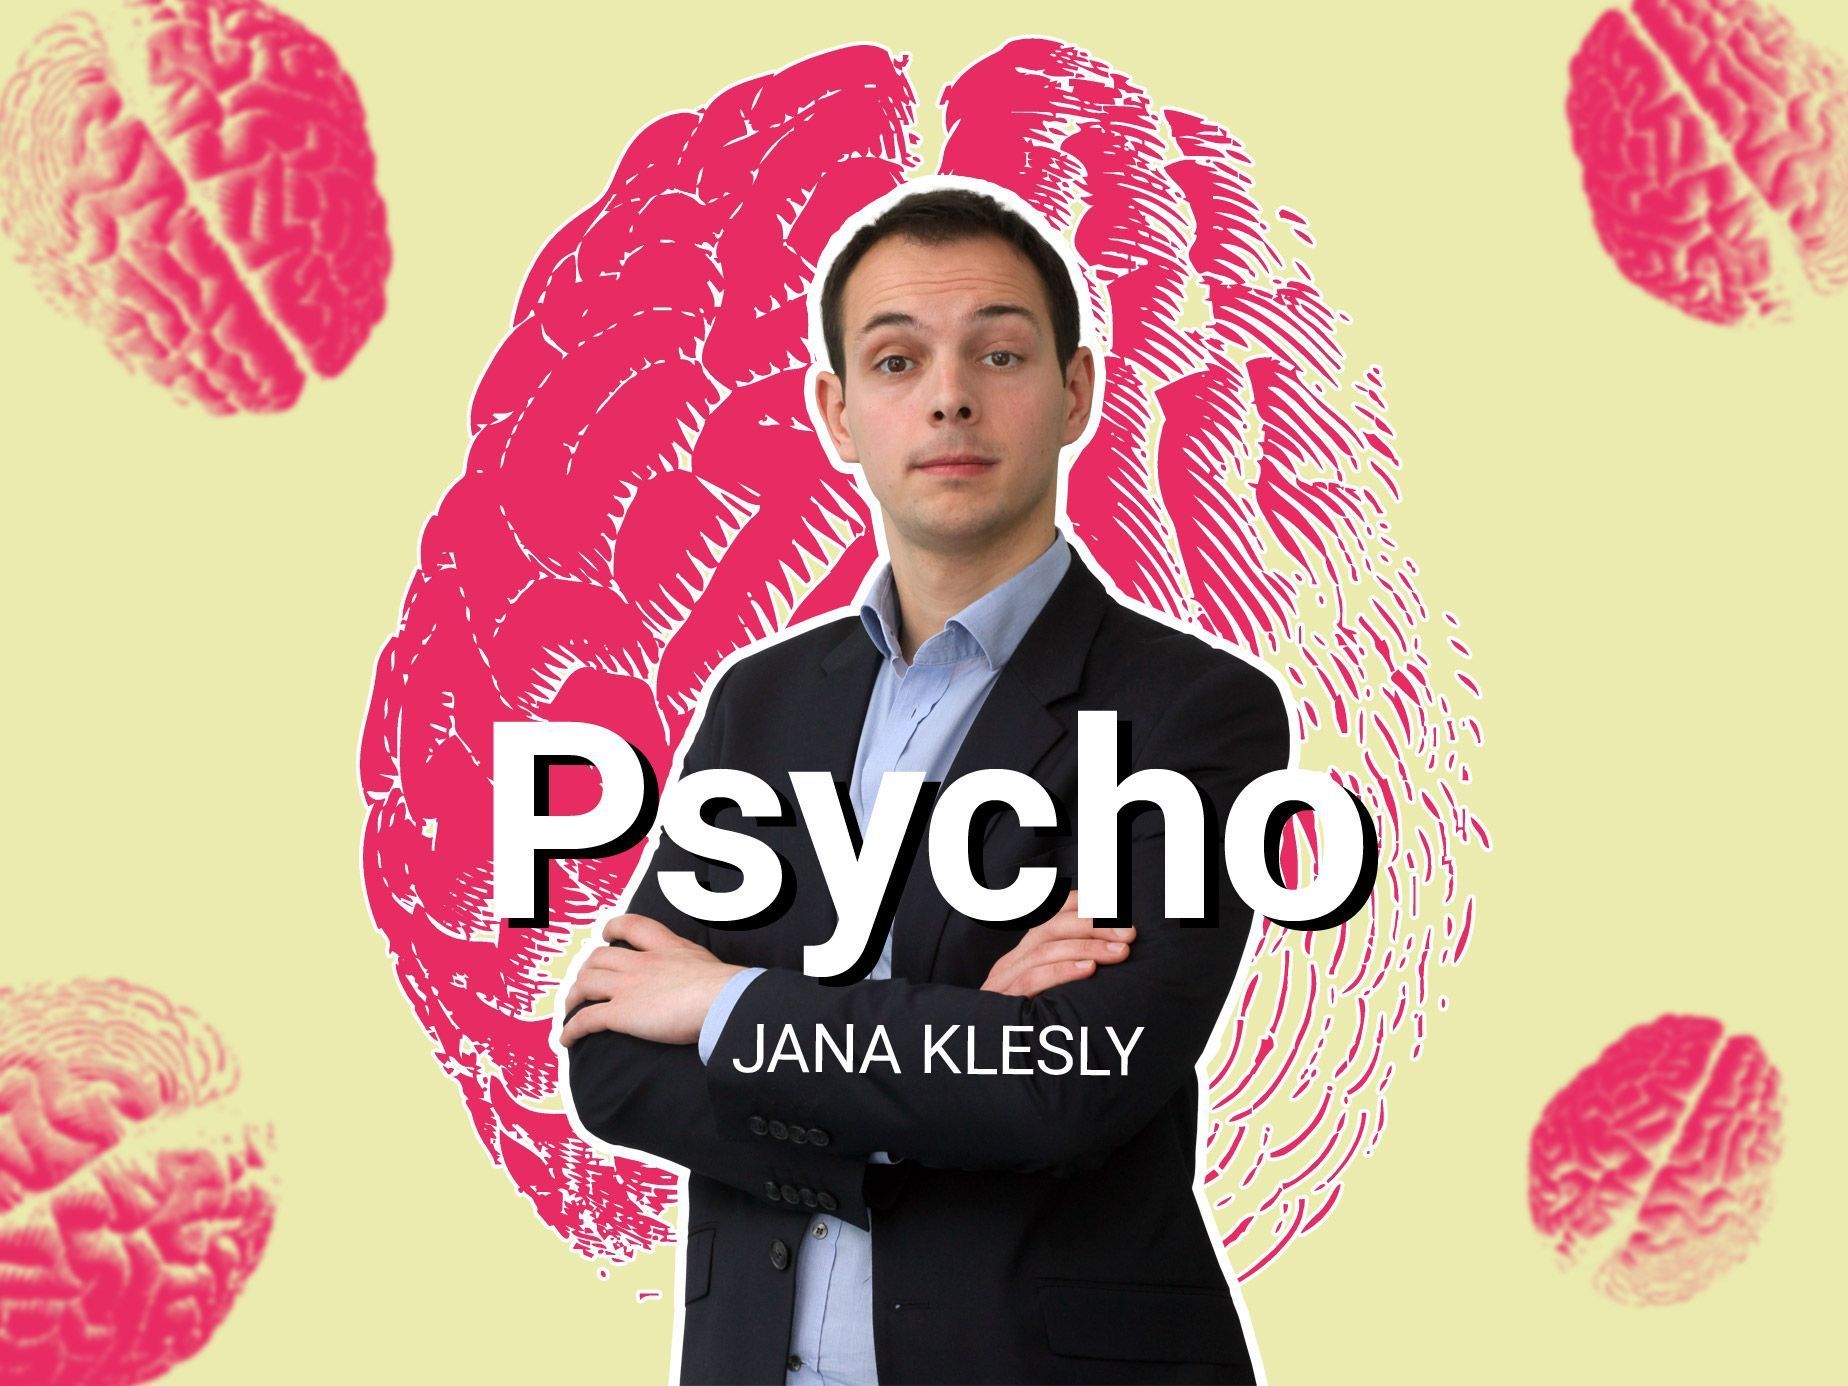 Psycho Jana Klesly